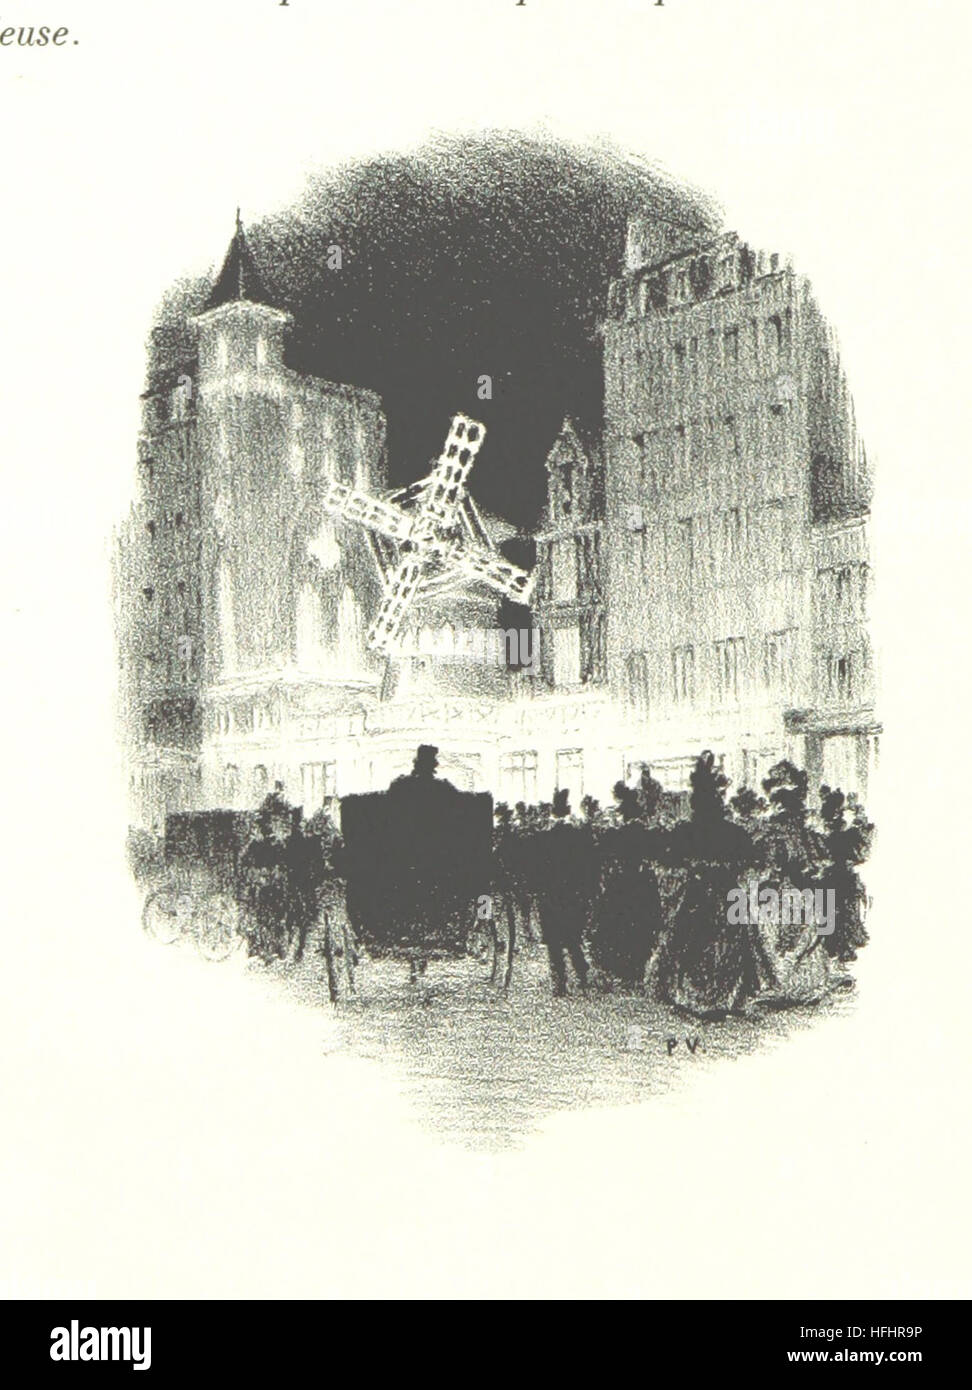 Image prise à partir de la page 18 de "La Vie à Montmartre. Illustrations de P. Vidal' image prise à partir de la page 18 de "La Vie à Montmartre Banque D'Images